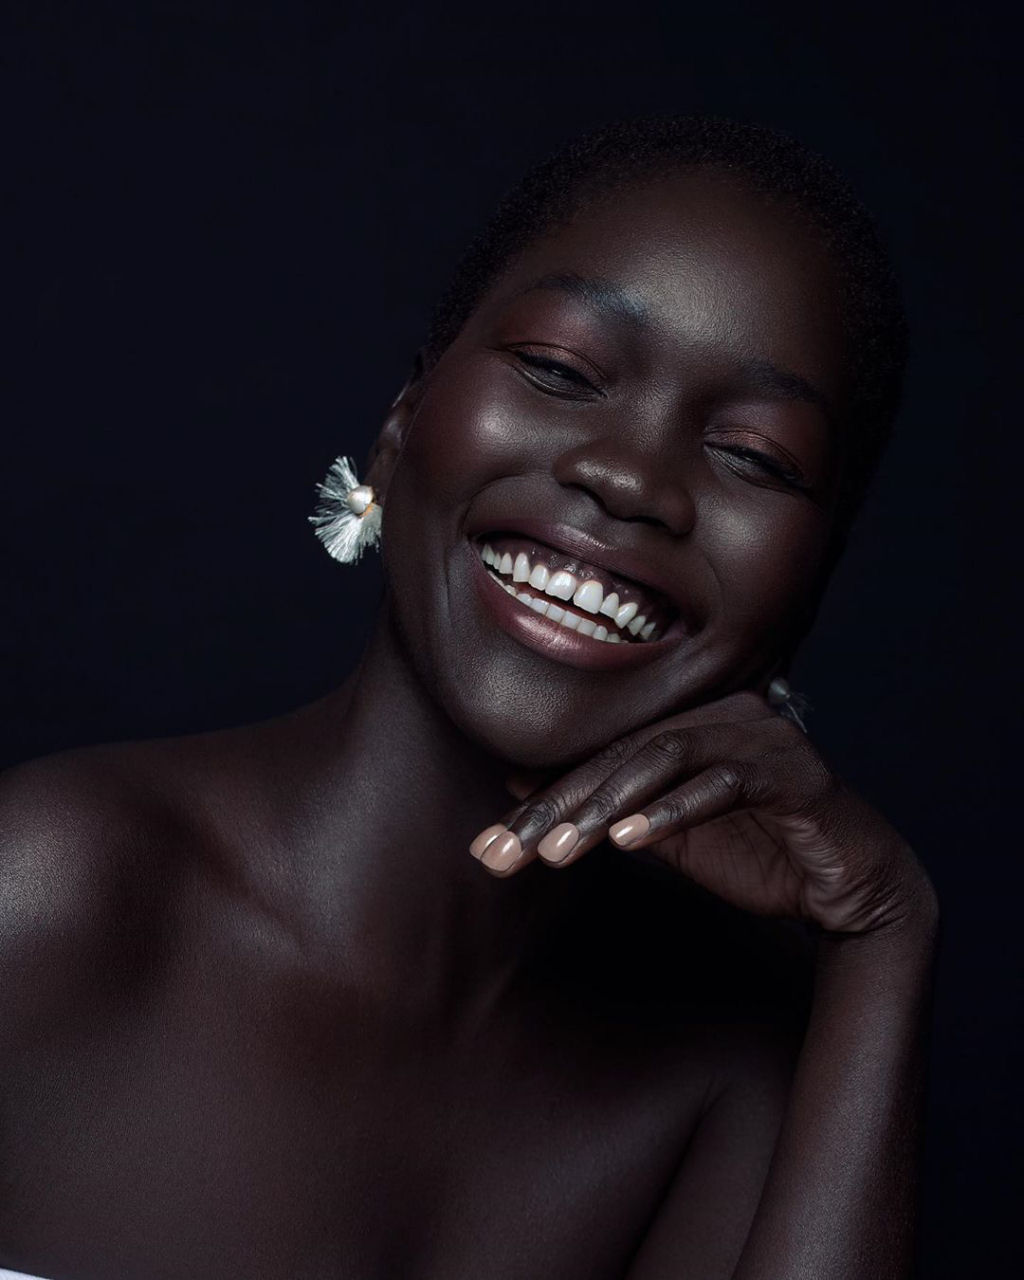 Queen of Dark, a modelo sudanesa que promove a diversidade com sua linda e invulgar pele escura